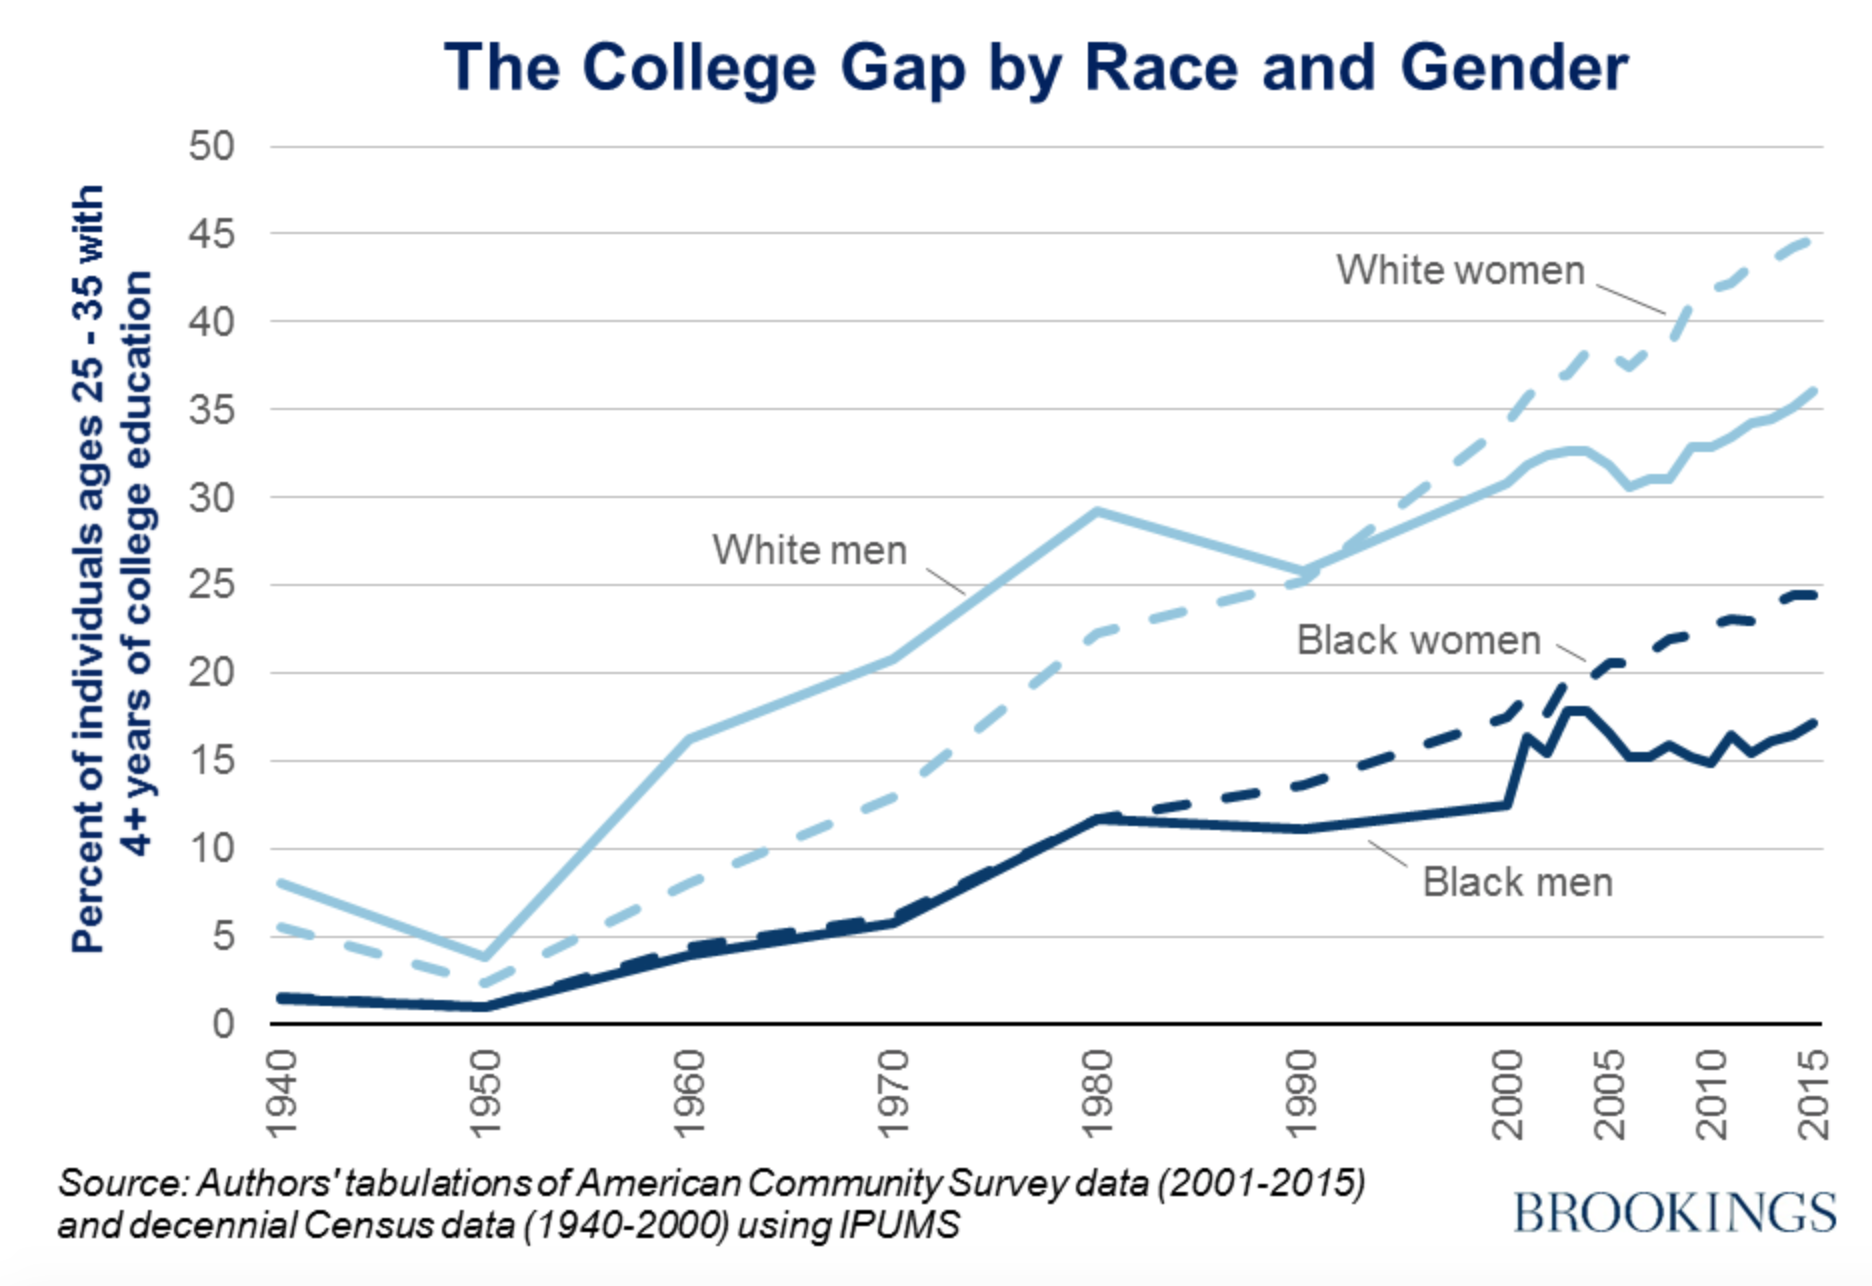 Figura 2: Gráfico que muestra el porcentaje de población negra que accede a estudios universitarios en Estados Unidos, muy por debajo del porcentaje de población blanca. Es interesante notar que ambos casos, las mujeres reciben más títulos universitarios que sus compañeros hombres. Crédito: Reeves & Guyot (2017).